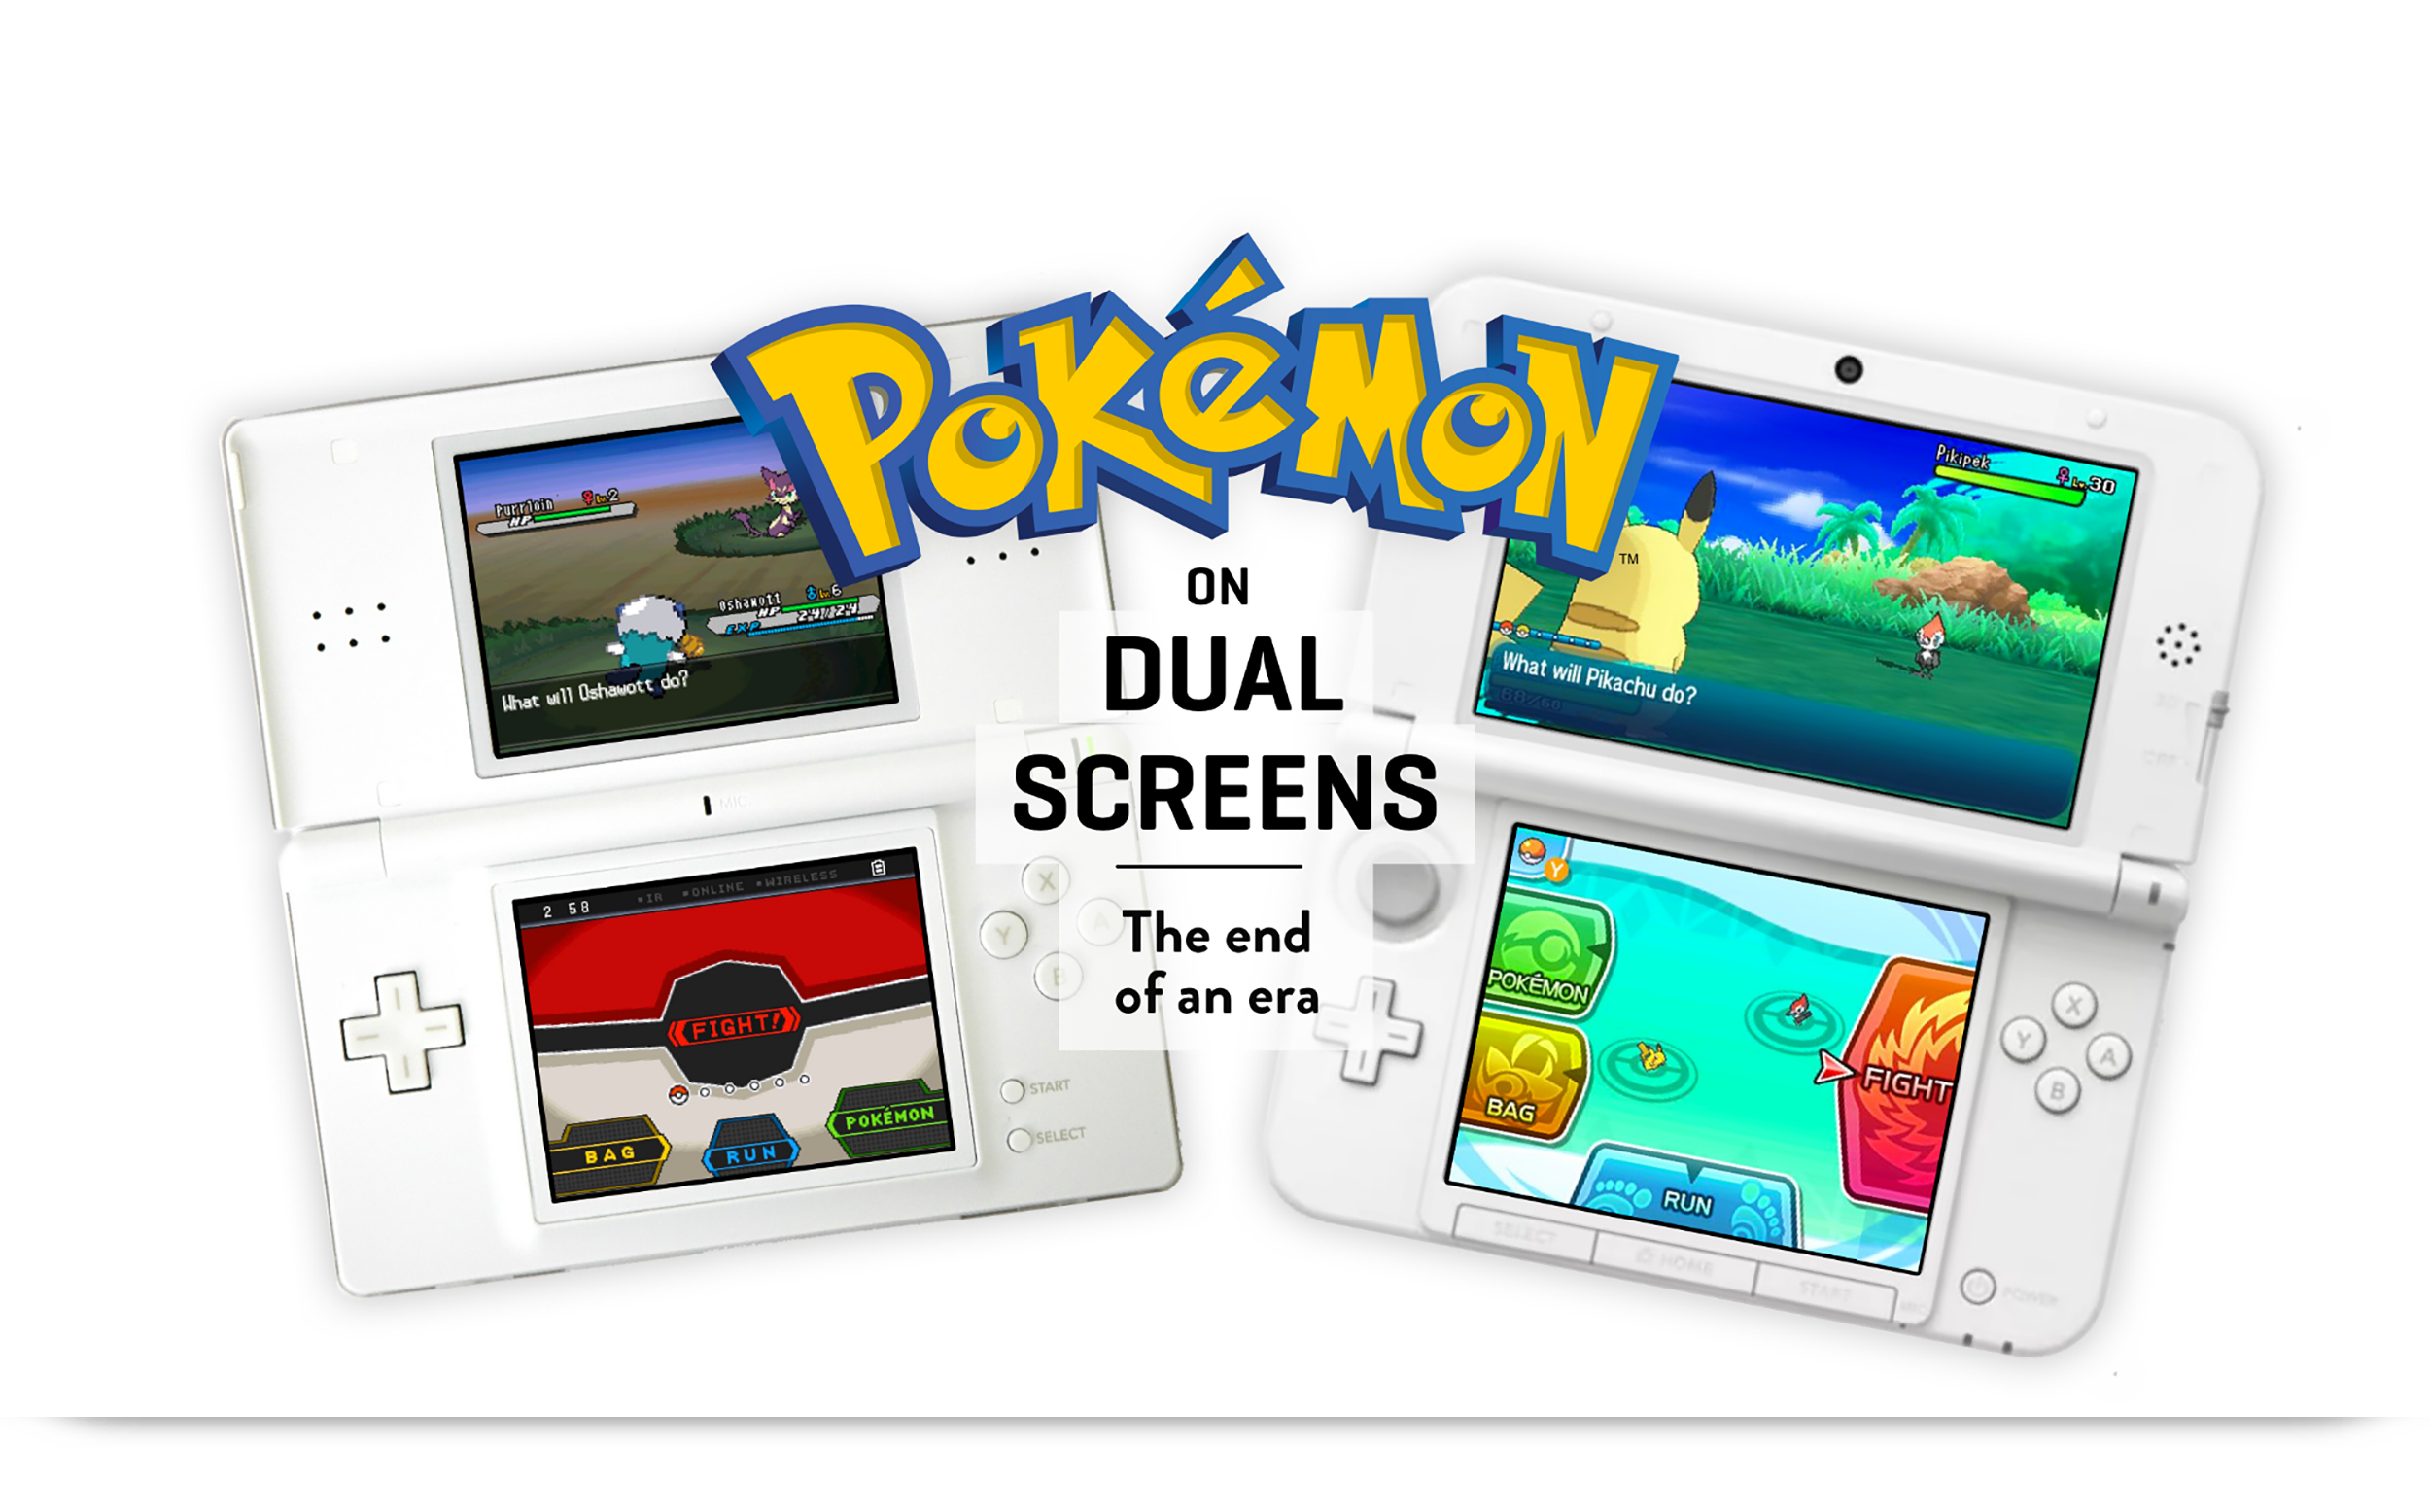 Pokémon Black Version 2 (Nintendo DS, 2012) for sale online